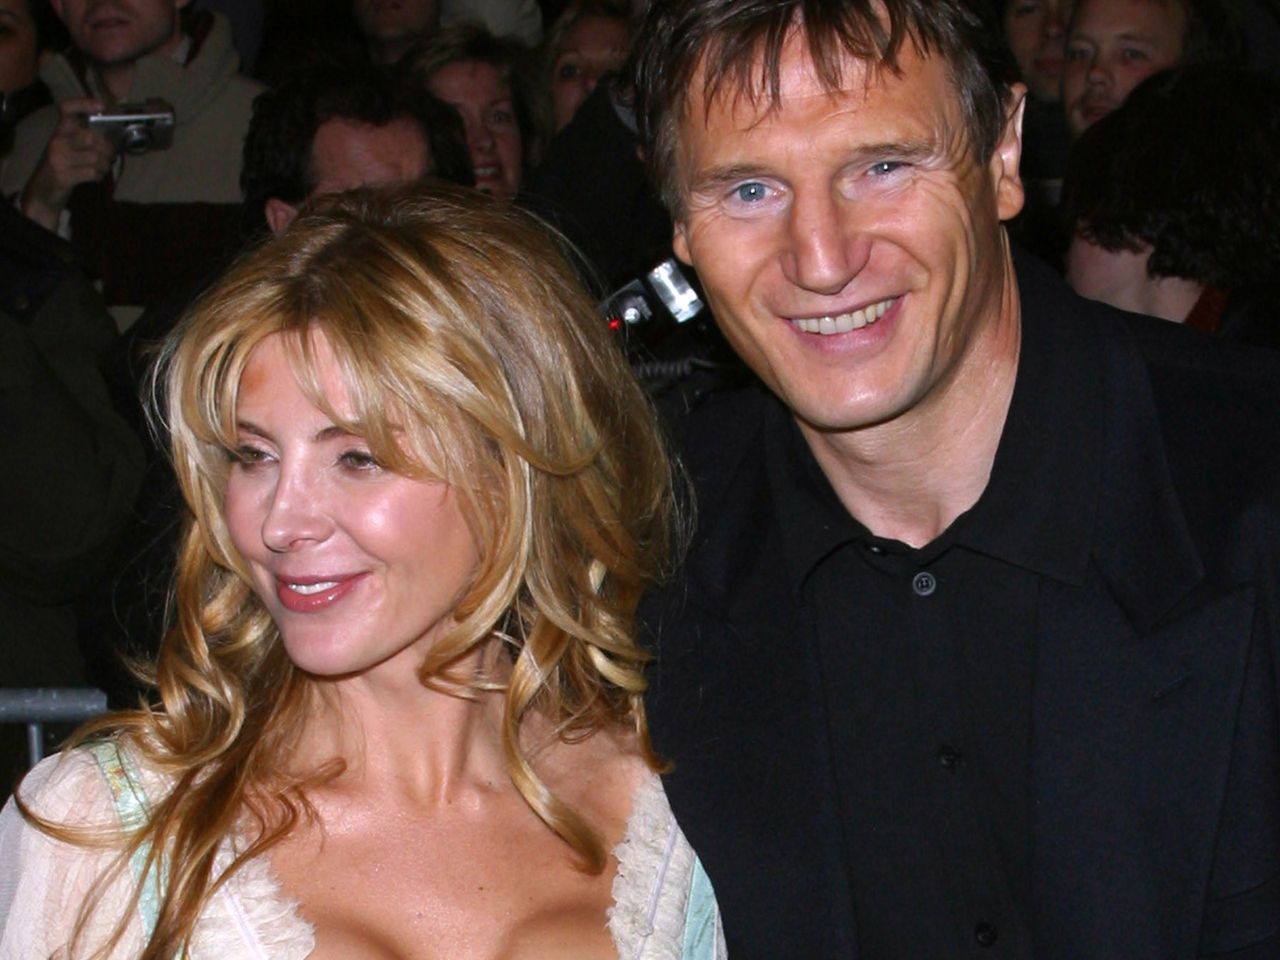 Liam Neeson i Natasha Richardson byli idealną parą. Przerwała to tragedia